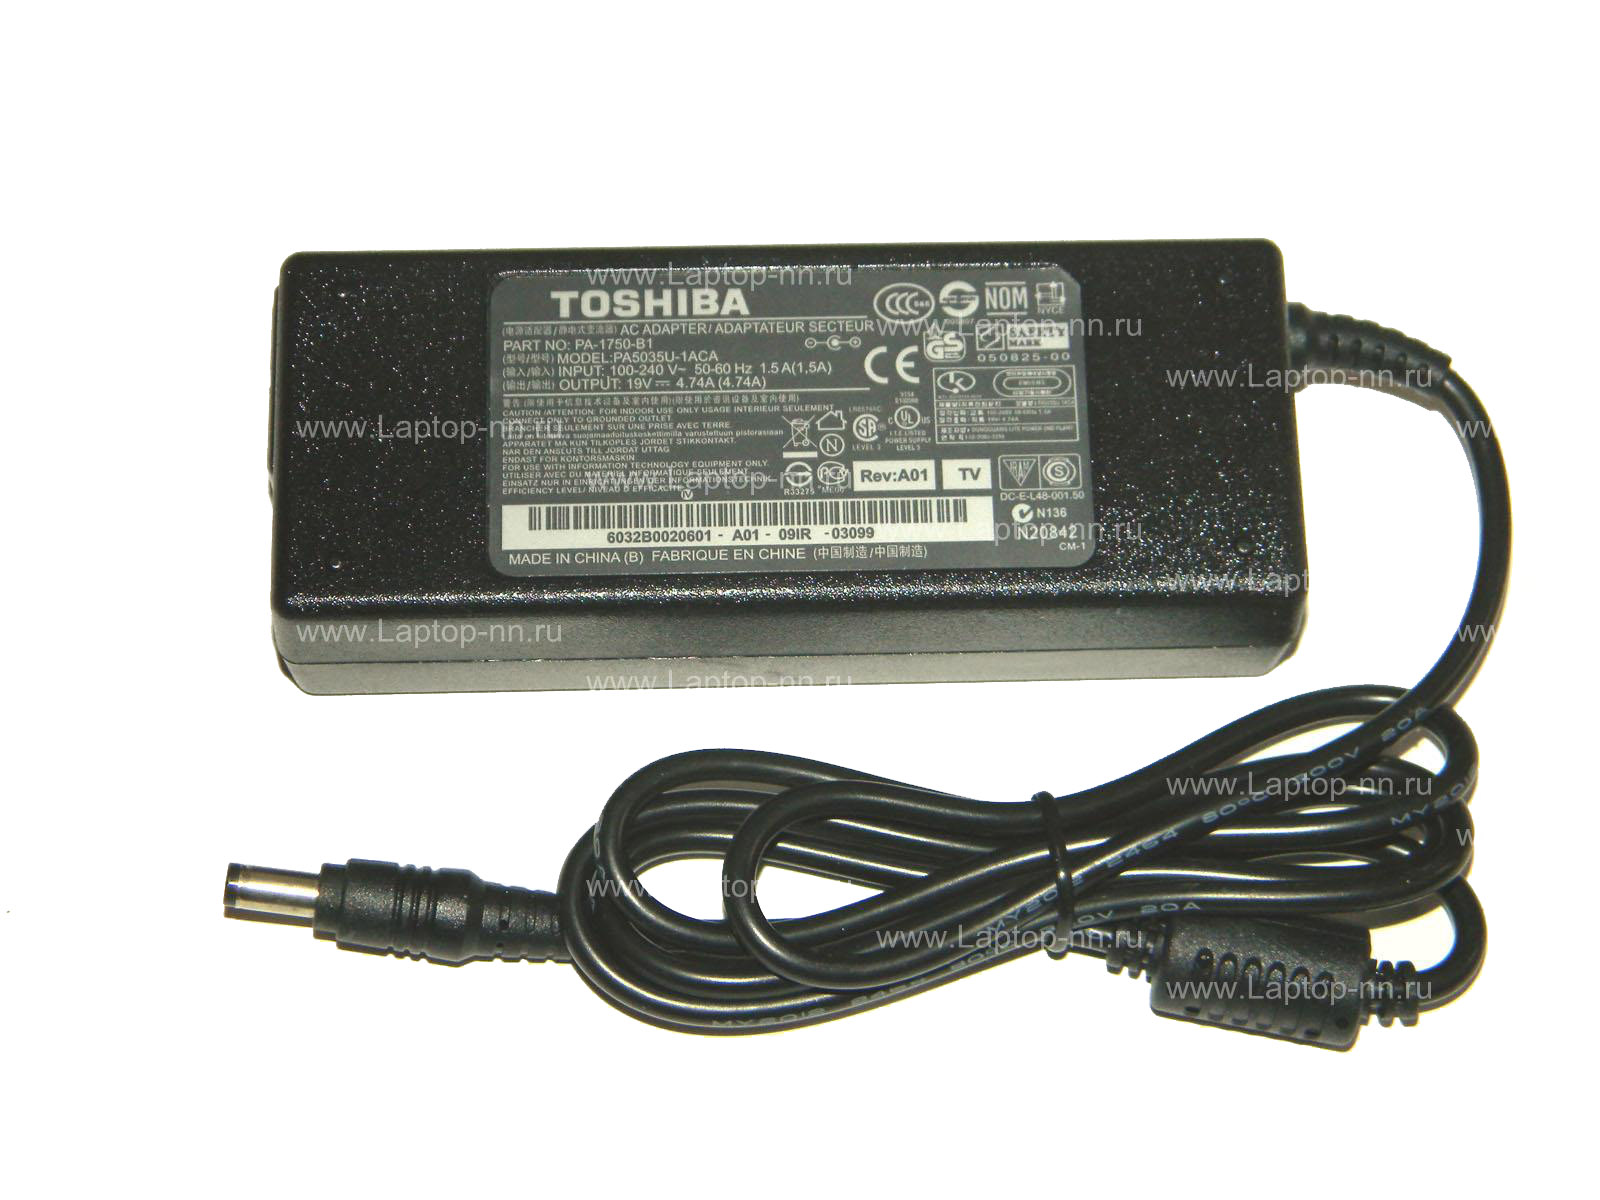 Купить блок питания для ноутбука Toshiba 19v 4.74a 90w 5.5mm x 2.5mm в Нижнем Новгороде